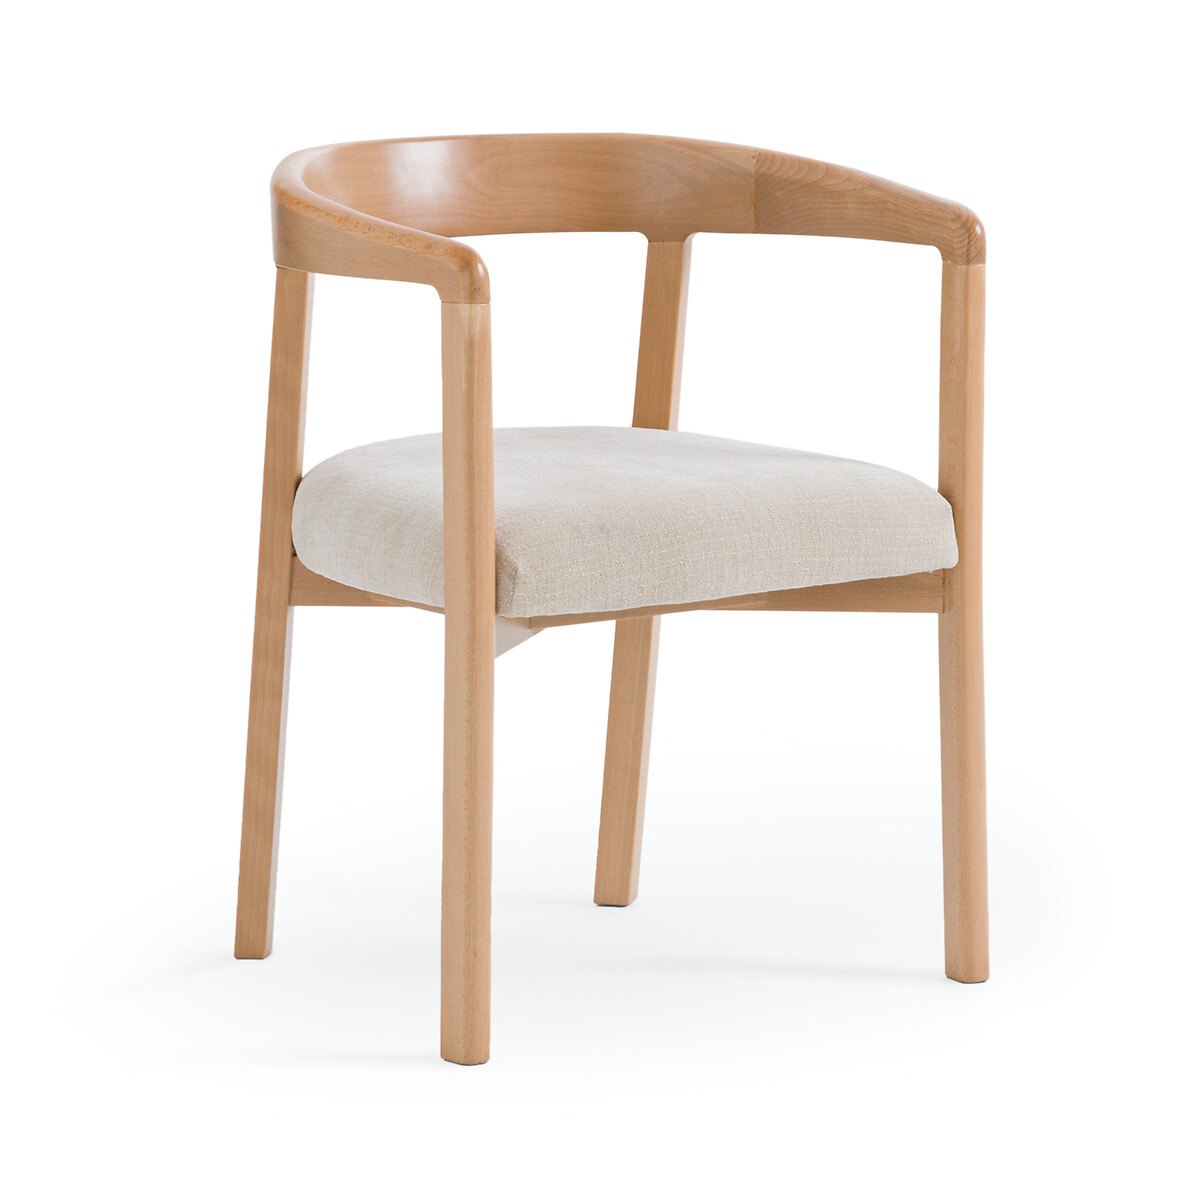 Кресло столовое с подлокотниками Germain единый размер бежевый кресло столовое для сада isabbo единый размер белый